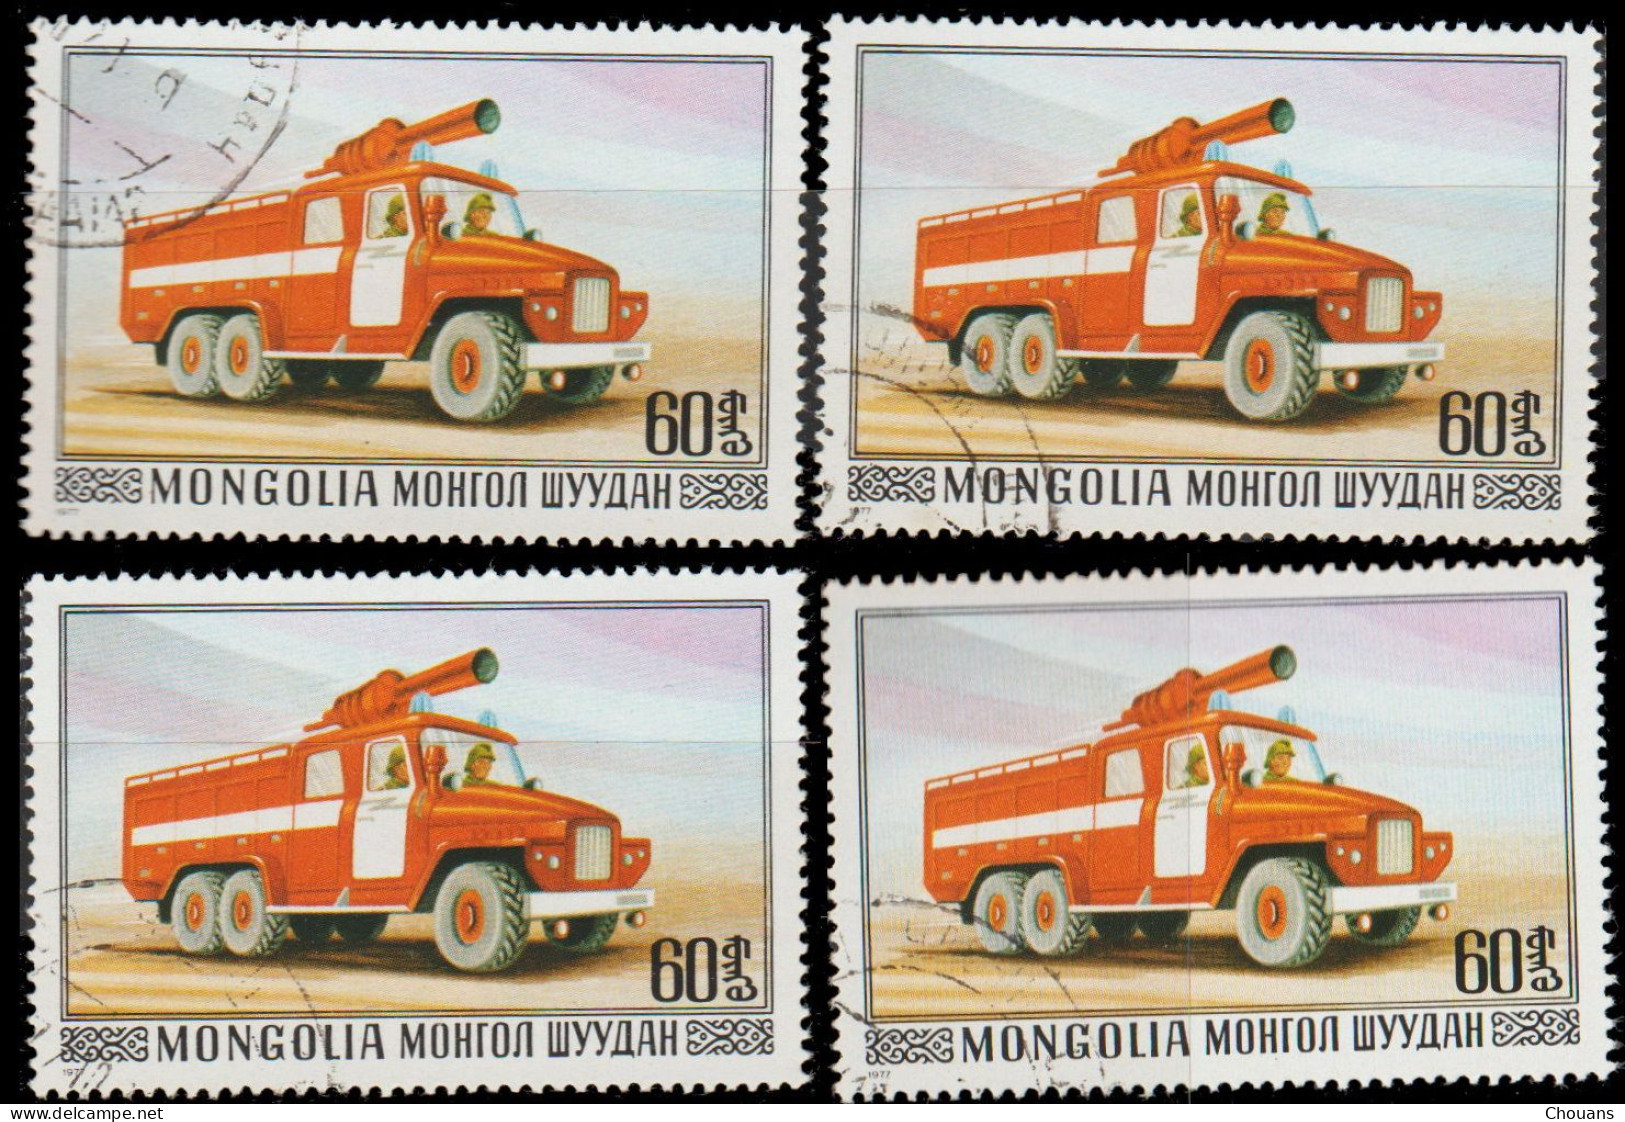 Mongolie 1977. ~ YT 922 (par 4) - Voiture Munie Extincteur à Mousse - Mongolia